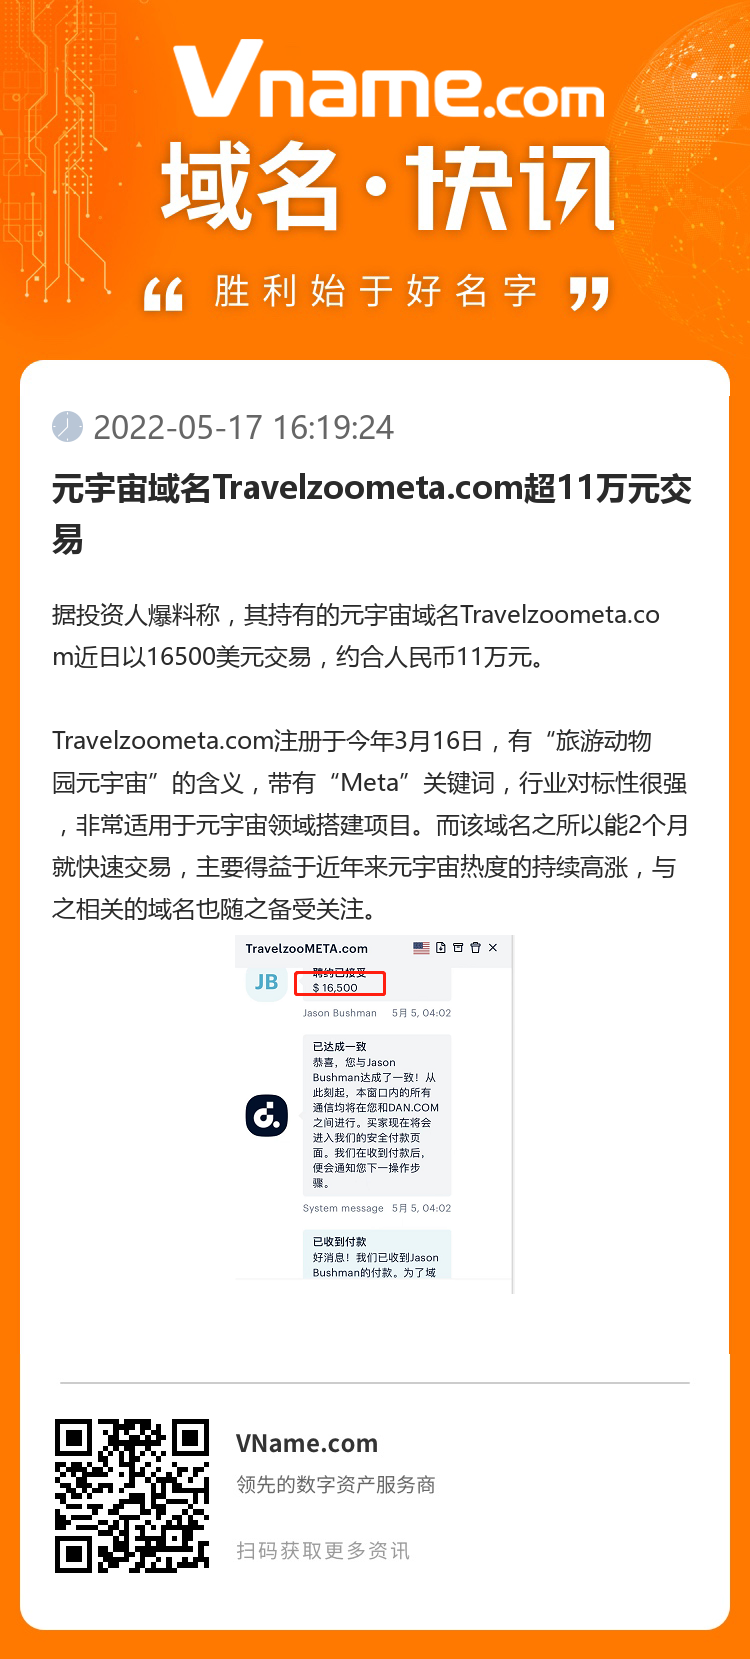 元宇宙域名Travelzoometa.com超11万元交易